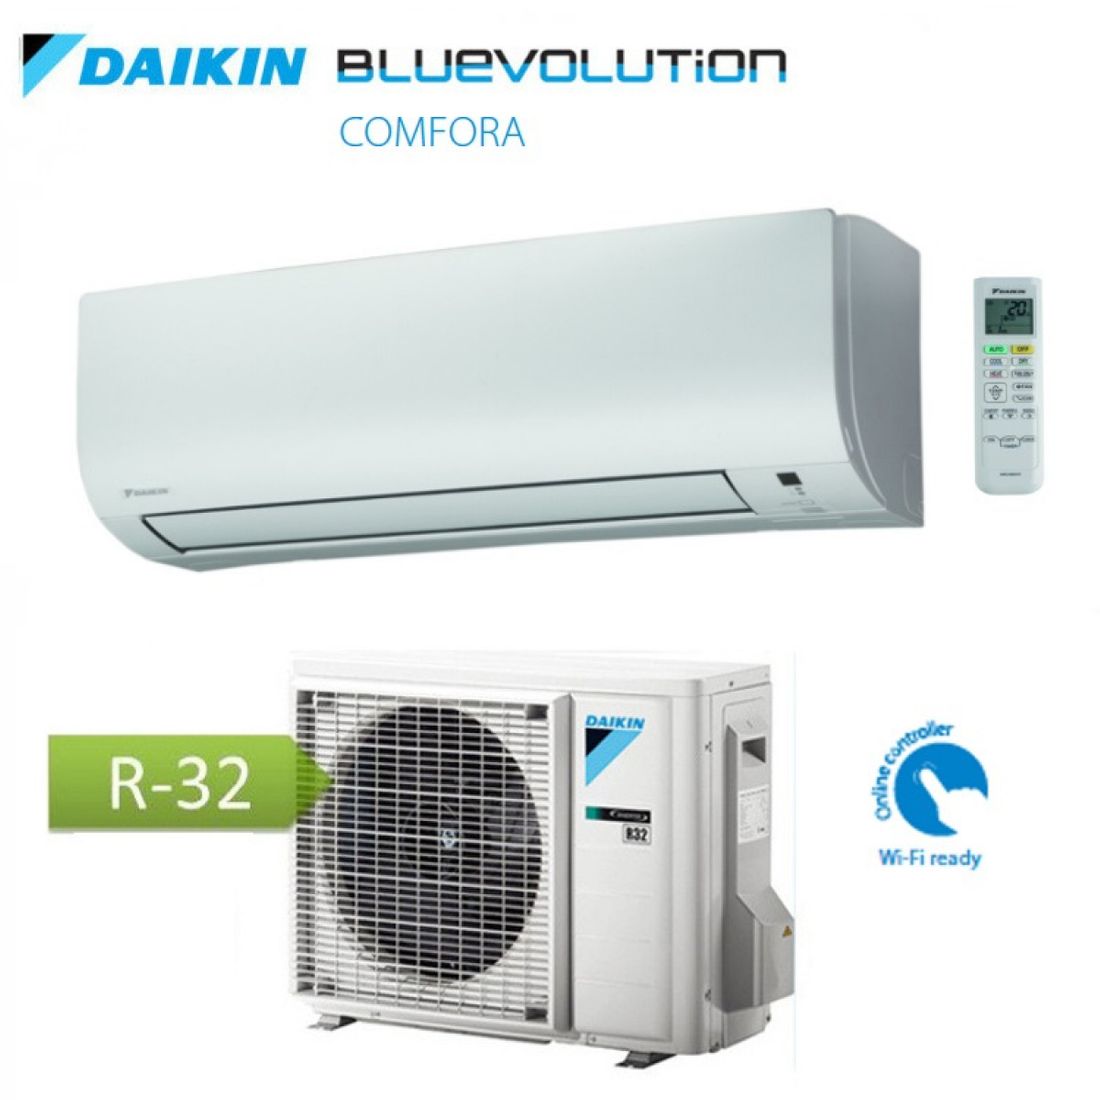 Daikin Comfora Duo Dual Kw Klimaanlage Klimager T Multisplit